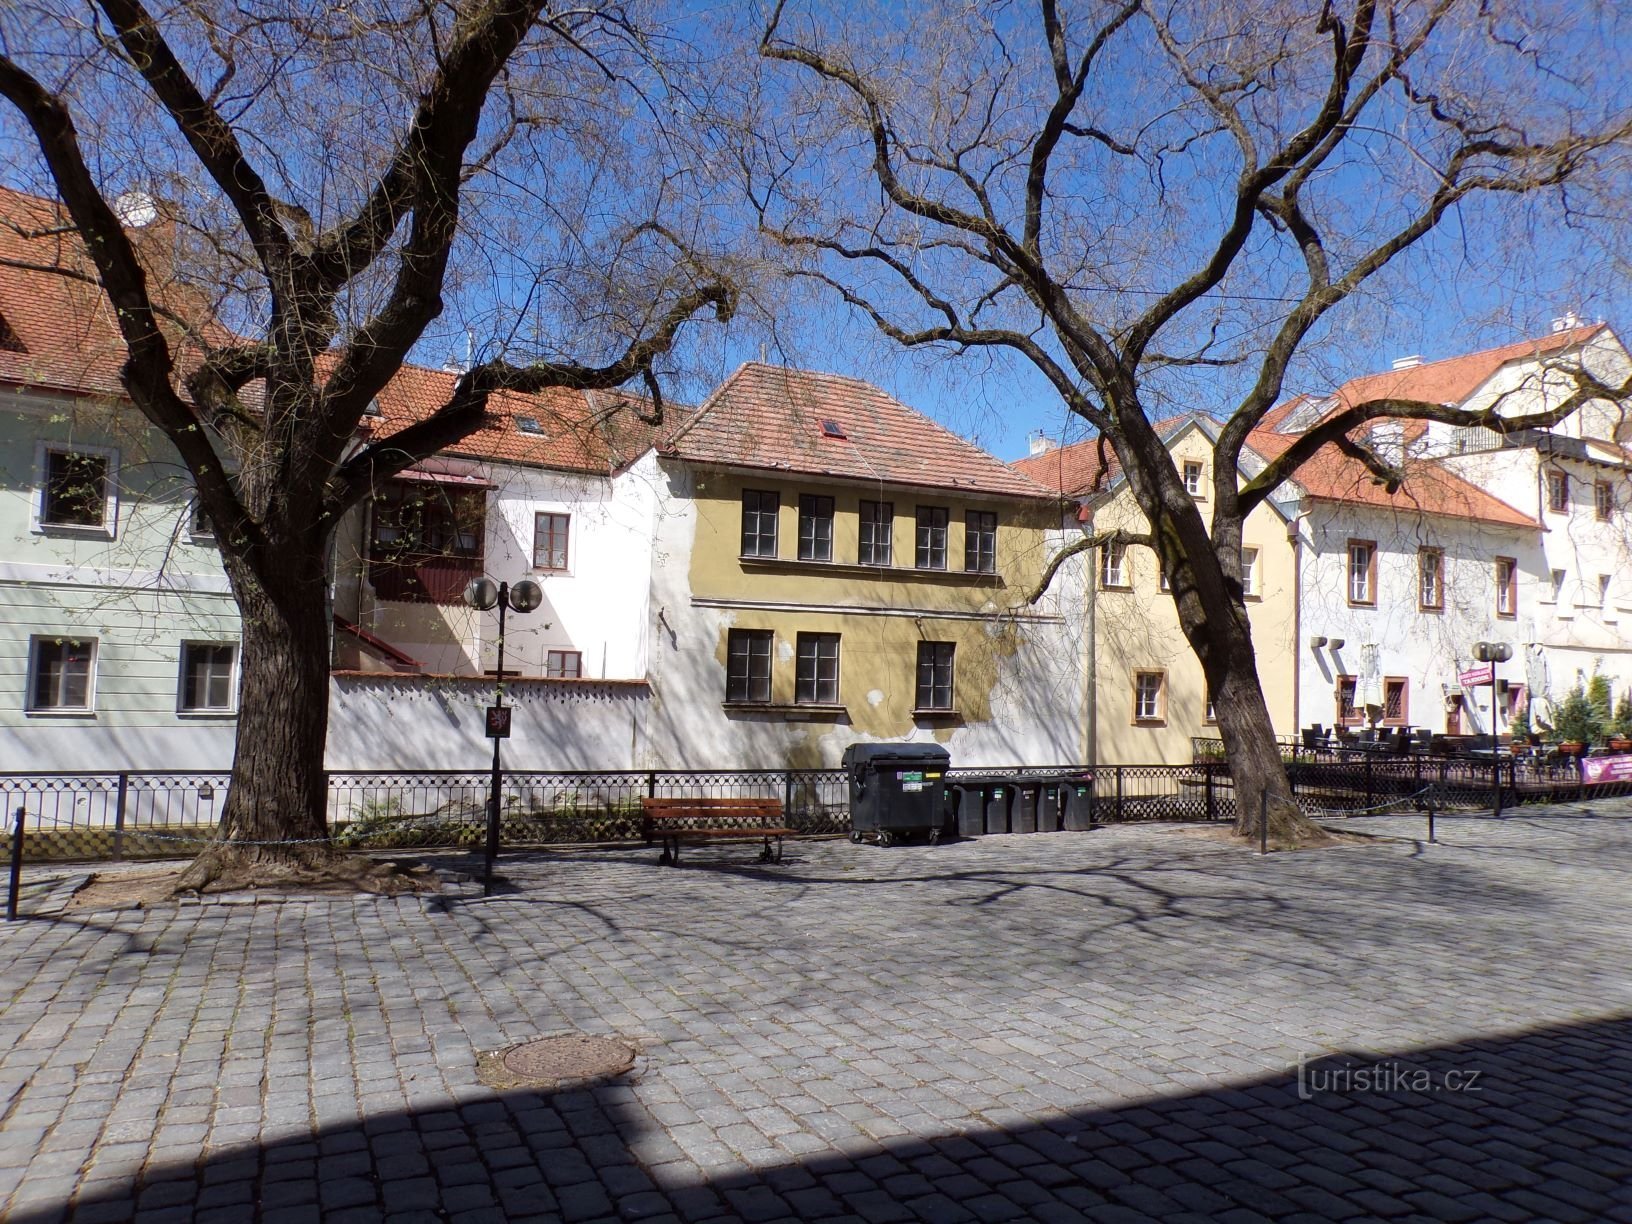 Quang cảnh những ngôi nhà ở Phố Kostelní từ Phố Pod Sklípky (Pardubice, 10.5.2021/XNUMX/XNUMX)